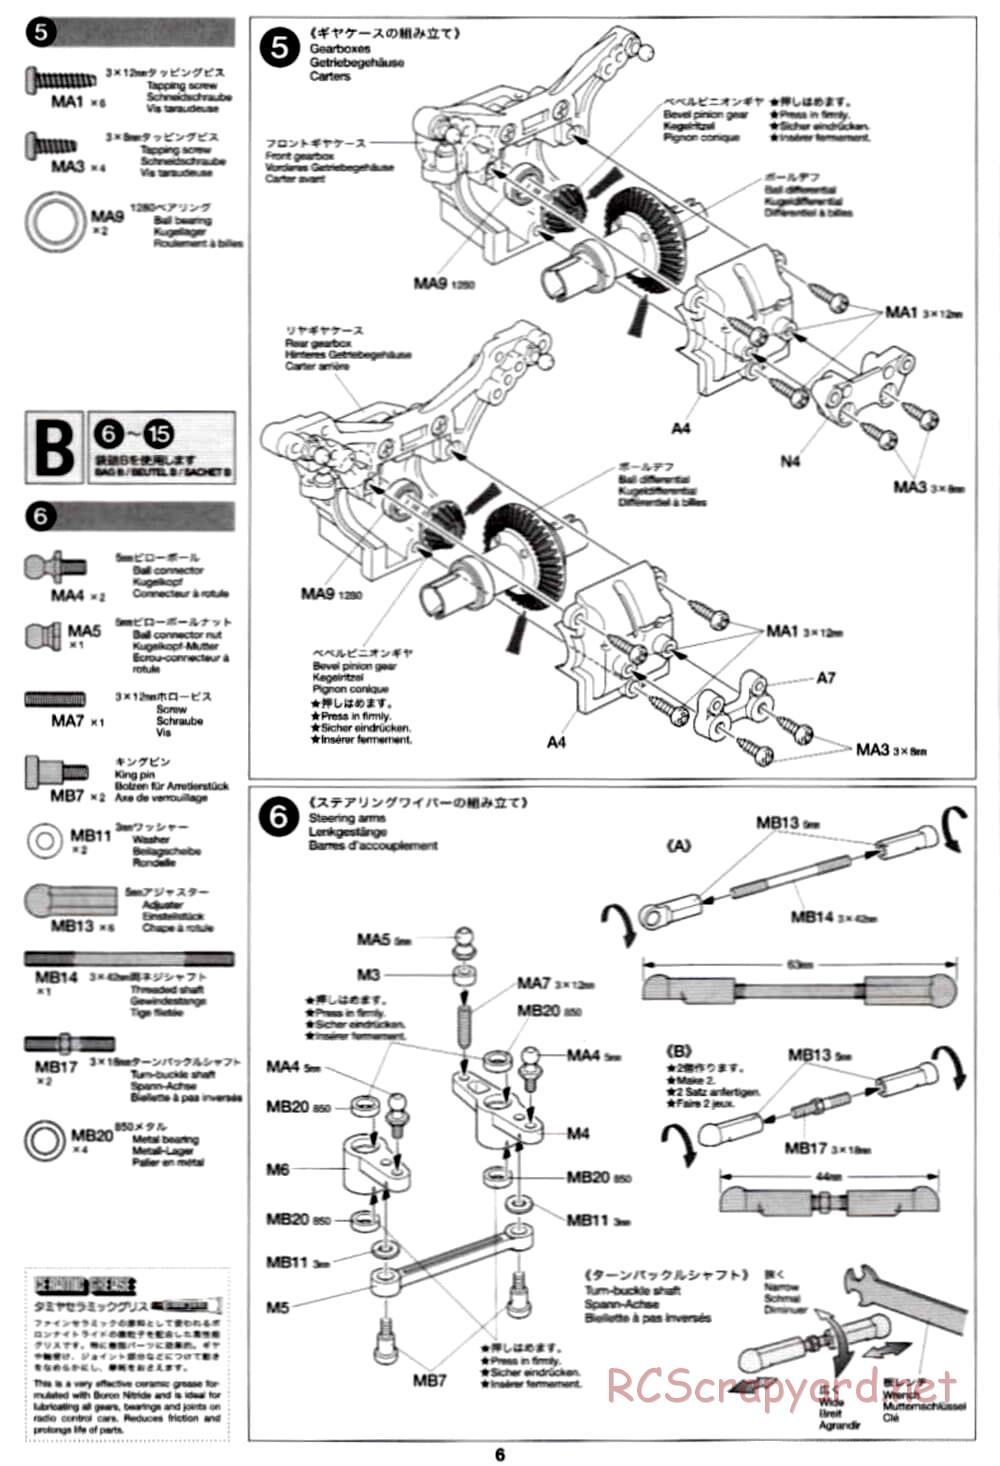 Tamiya - TB-02 Chassis - Manual - Page 6